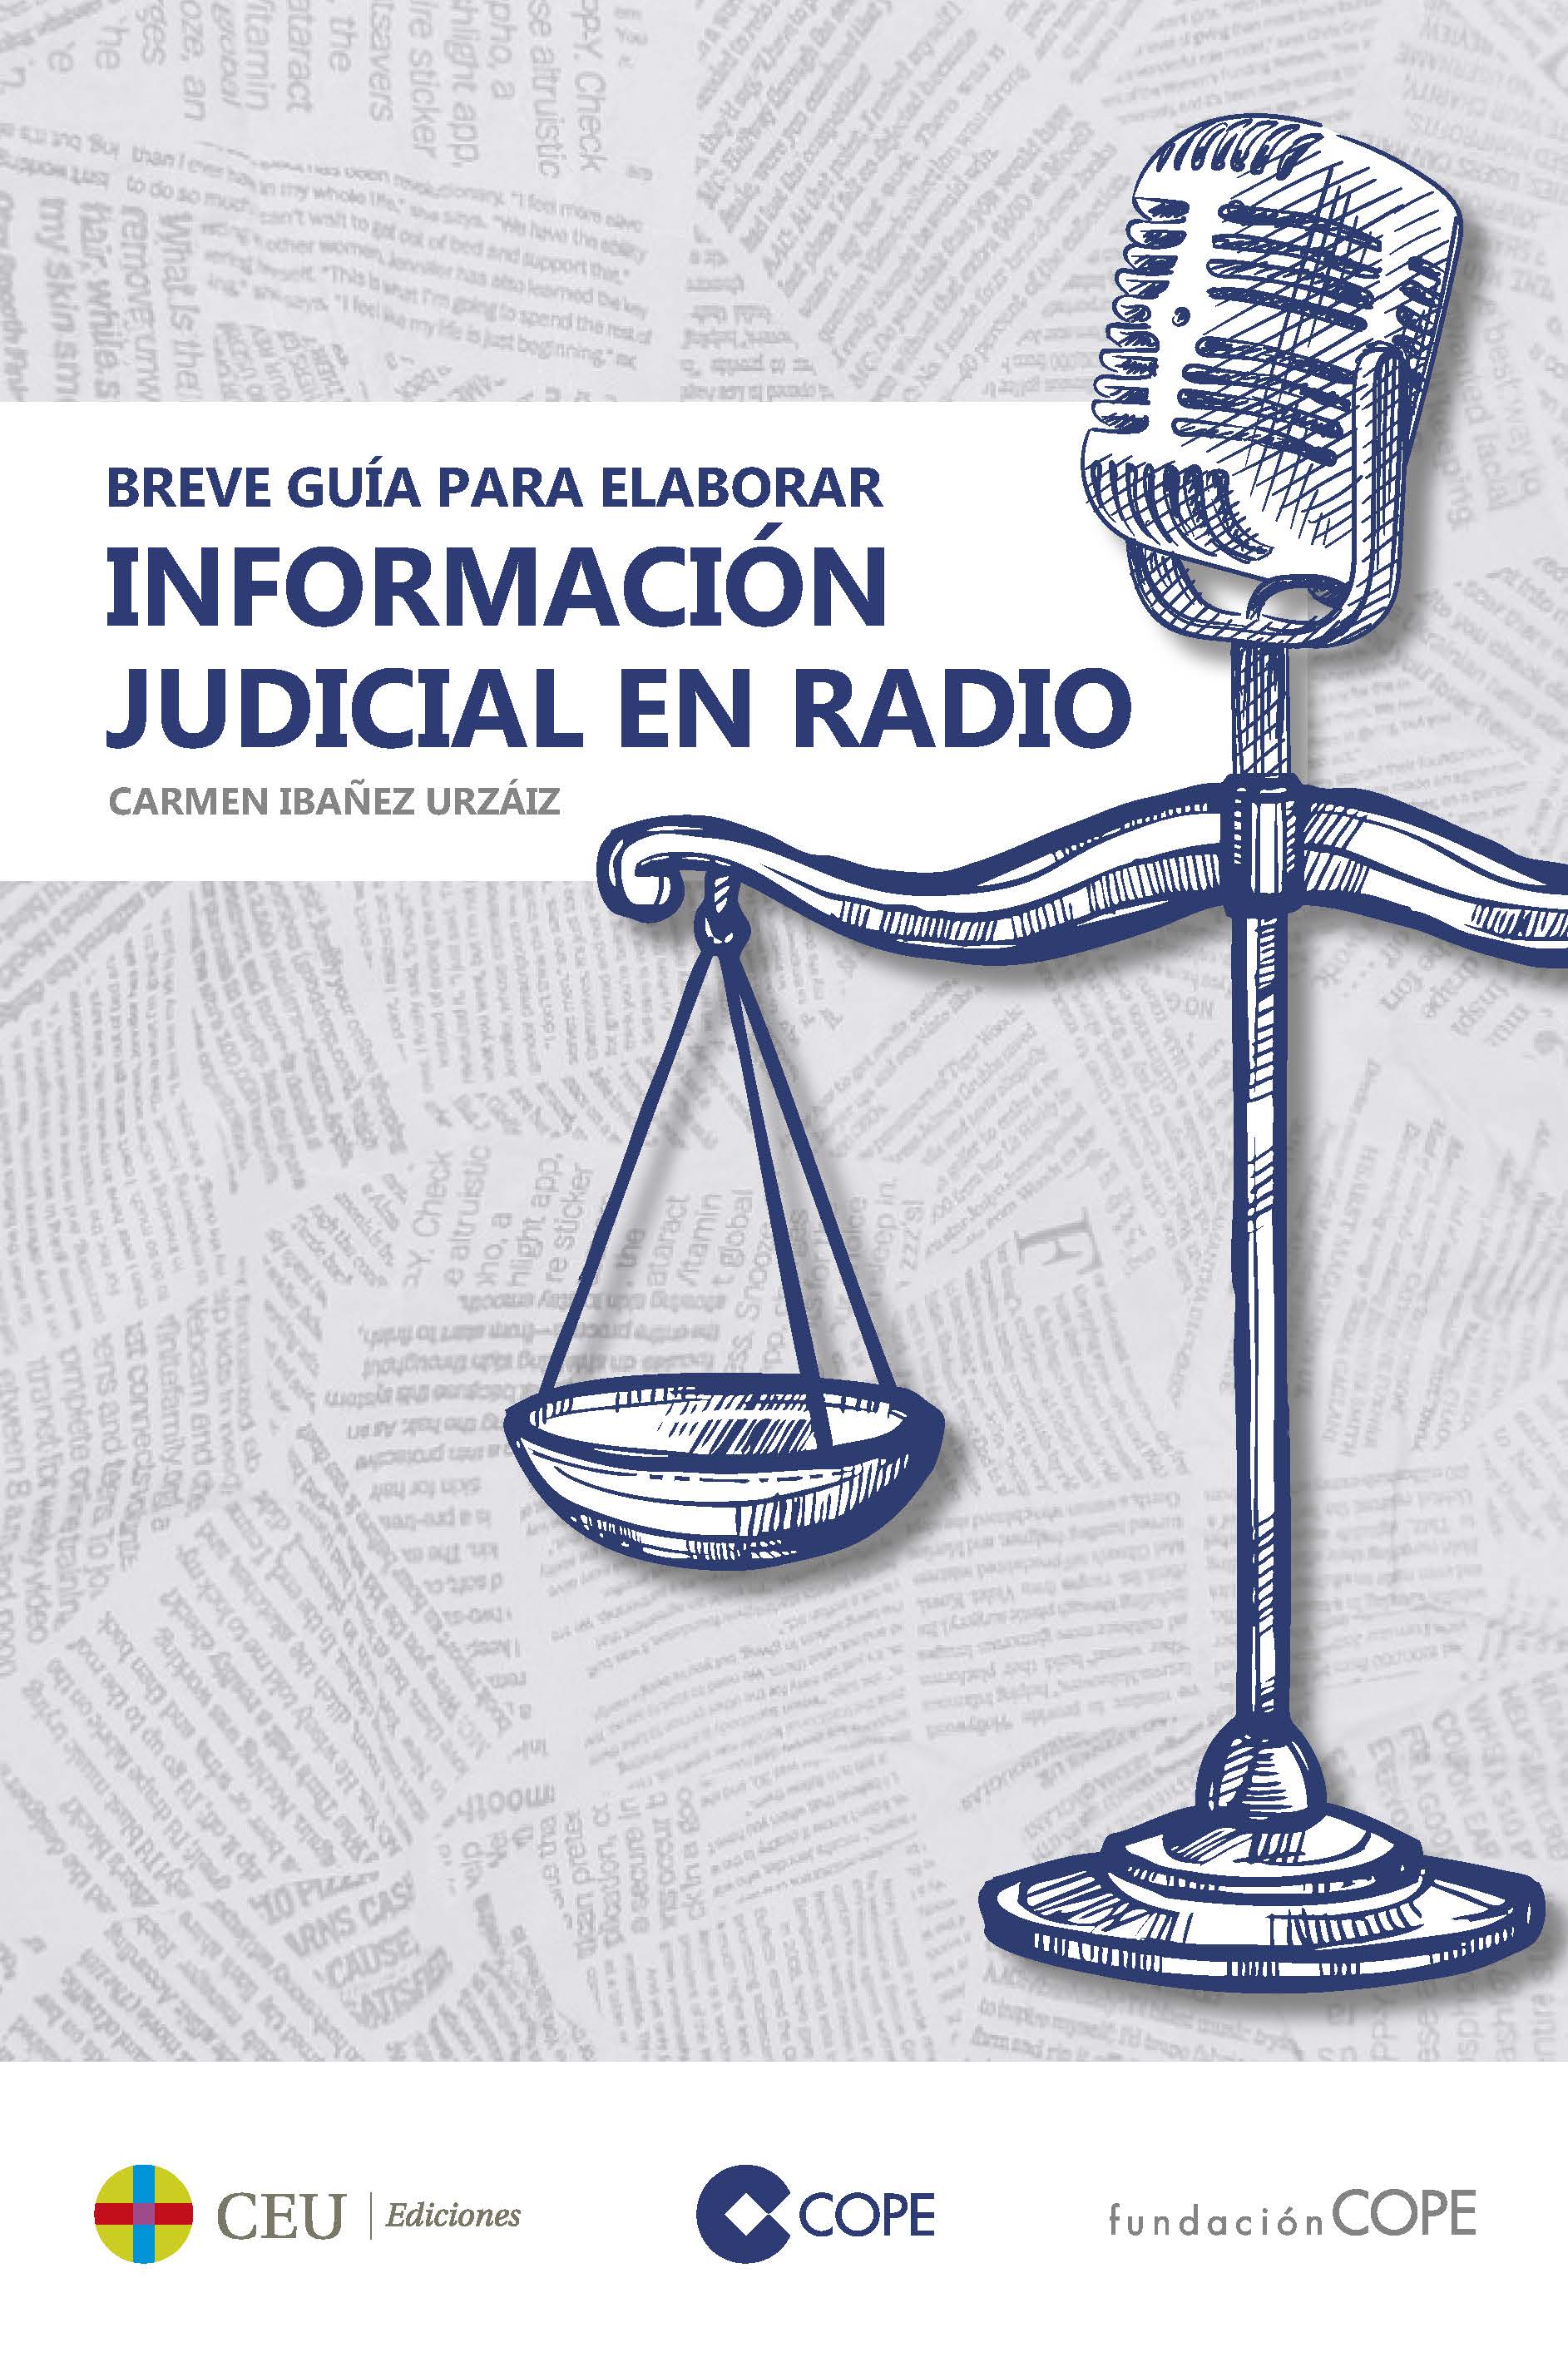 Imagen de portada del libro Breve guía para elaborar información judicial en radio